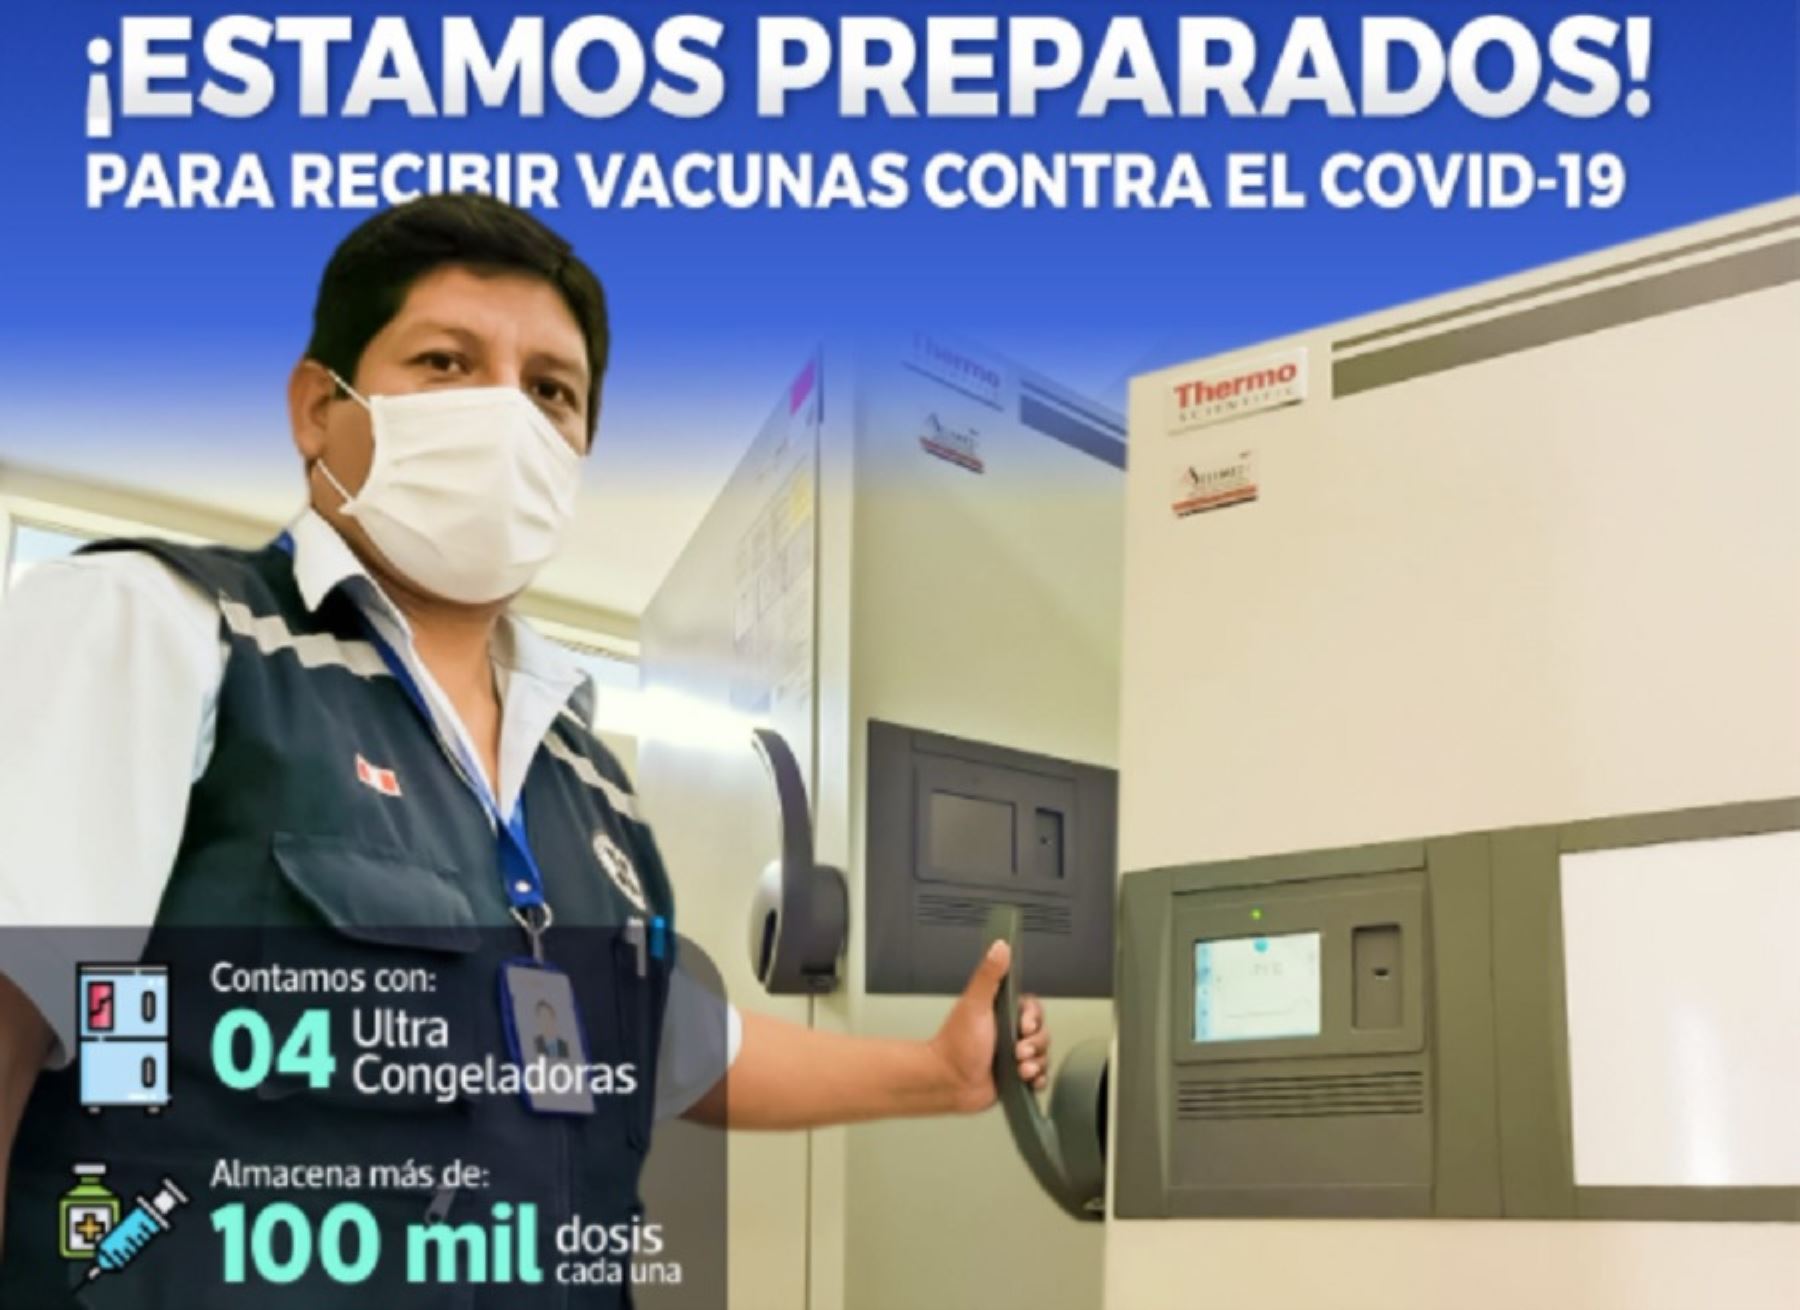 El Gobierno Regional de Tacna informó que tiene disponibles cuatro ultracongeladoras con capacidad para almacenar, cada una, 100,000 dosis de la vacuna del laboratorio Pfizer y tiene identificados los lugares para la inmunización contra el covid-19 de los adultos mayores de 80 años de edad.